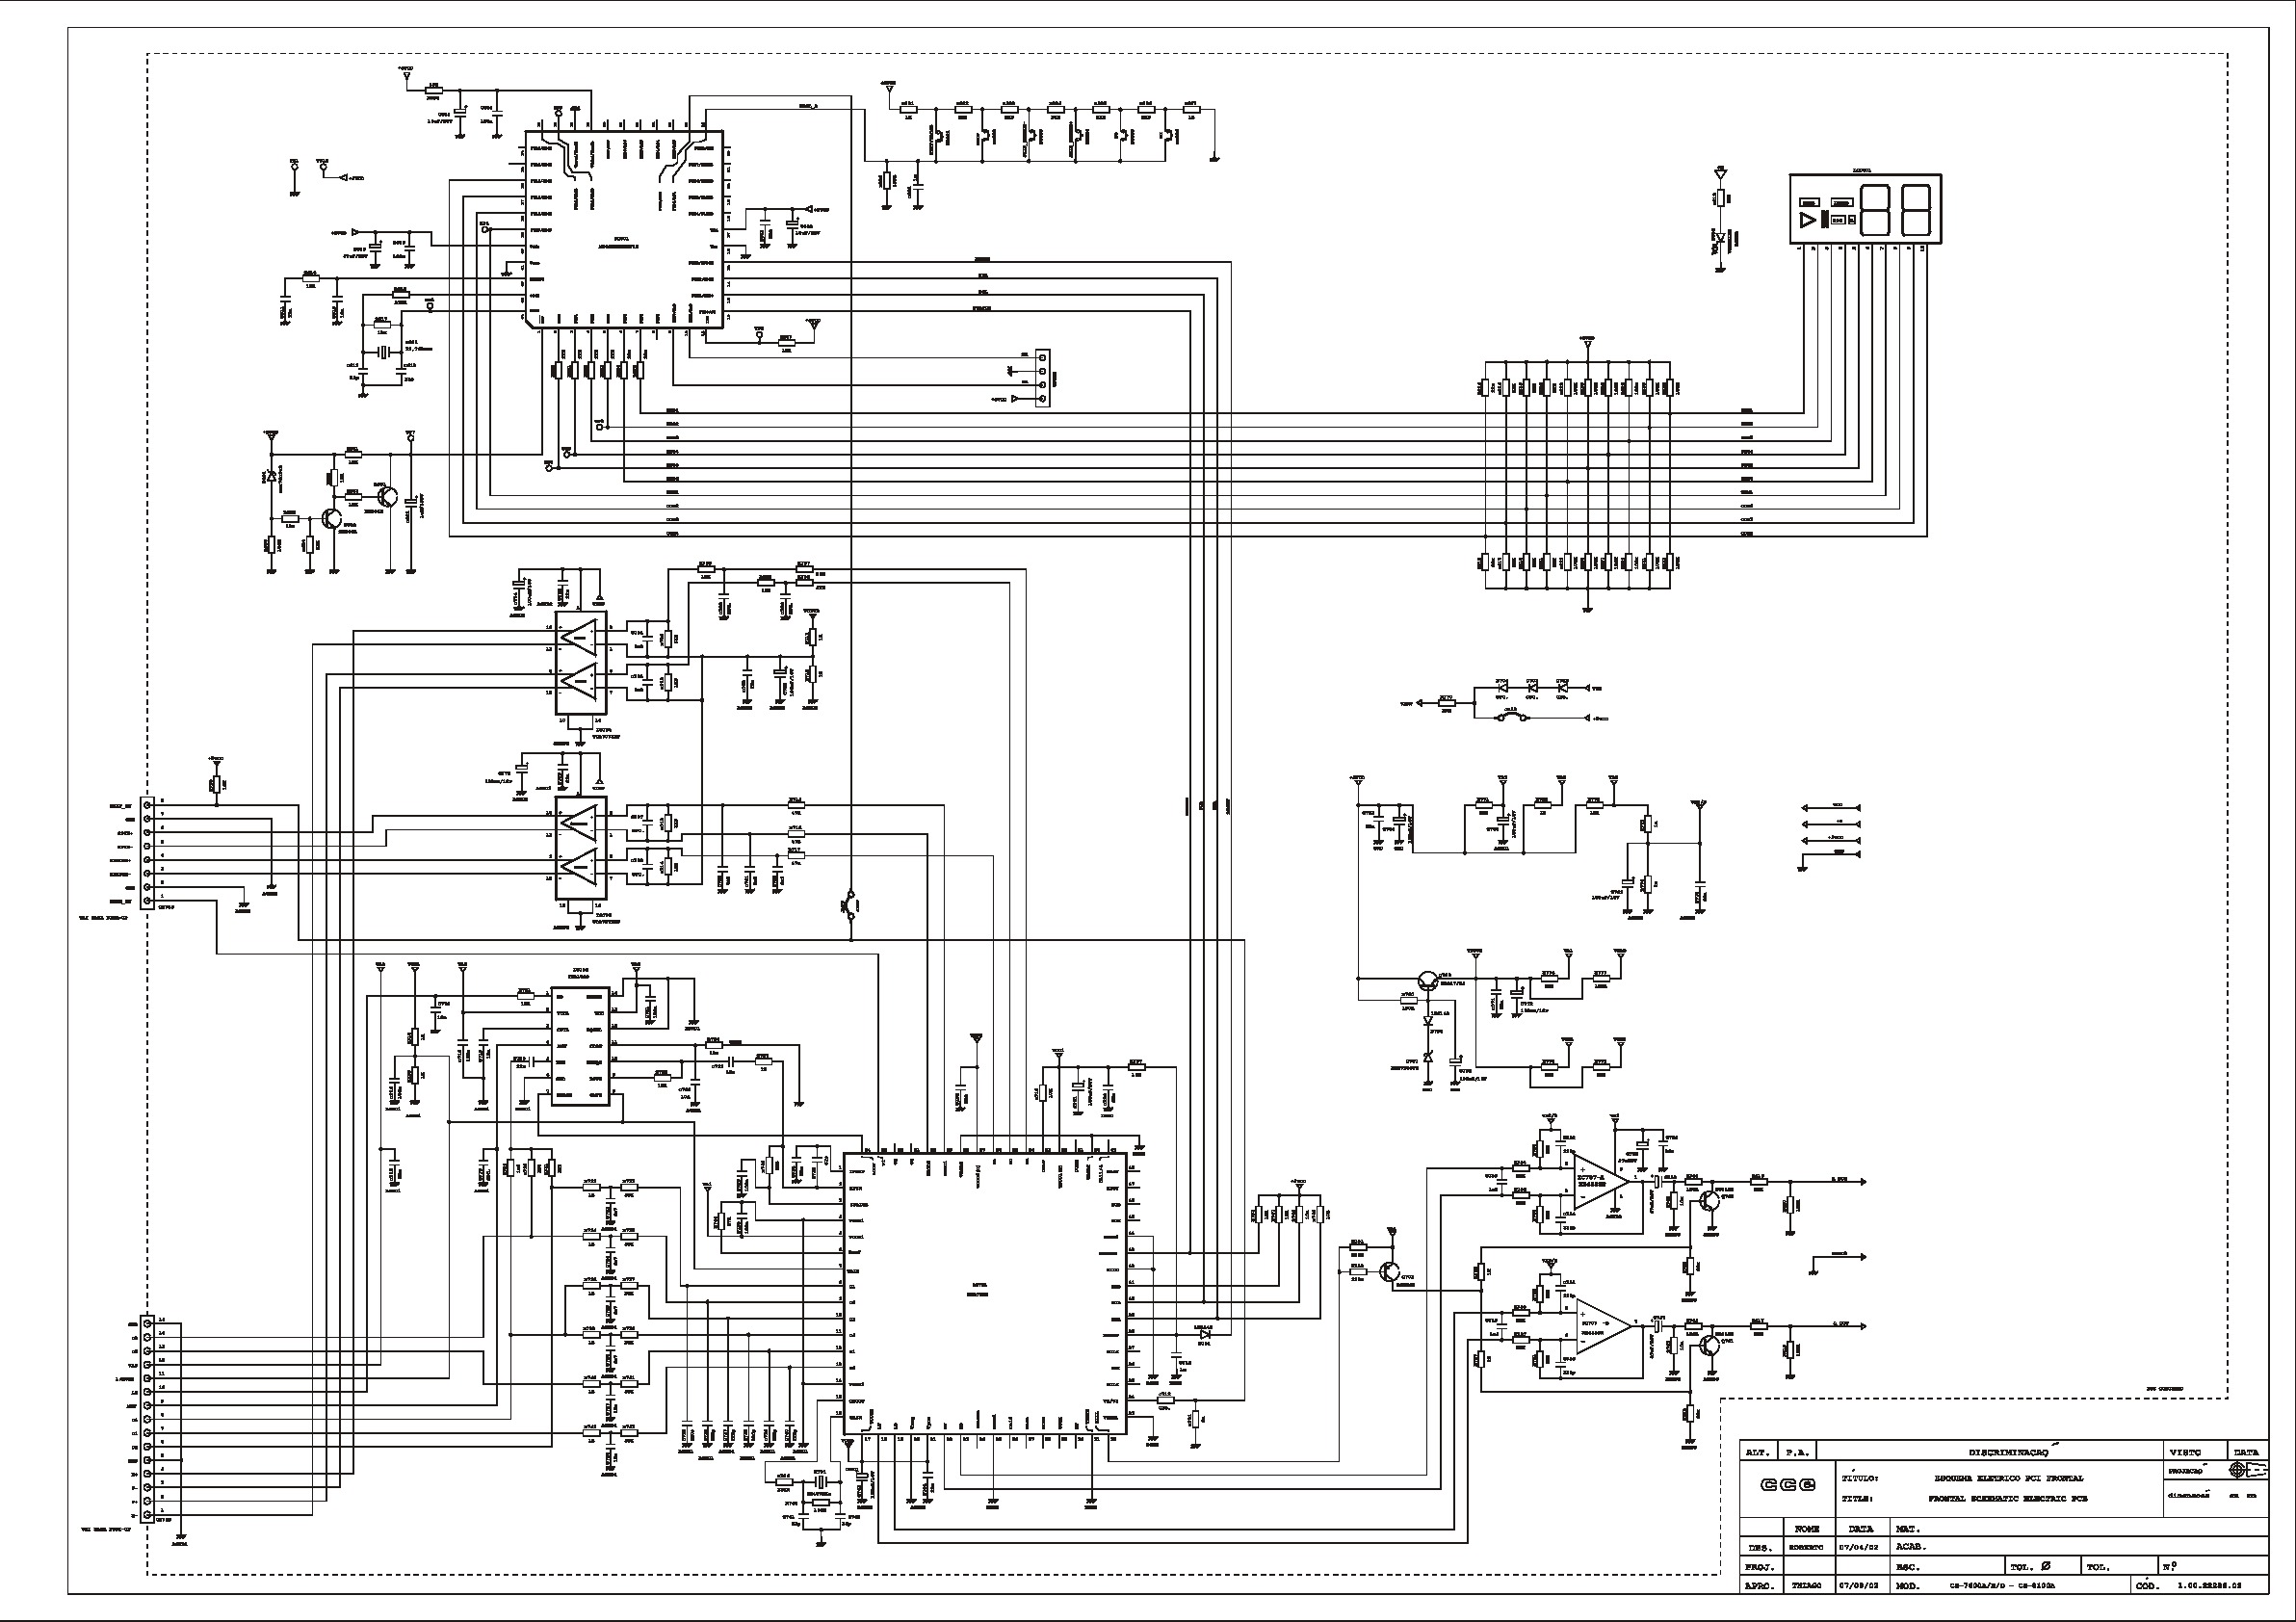 CCE Audio CS-7600D Diagrama Esquematico.pdf